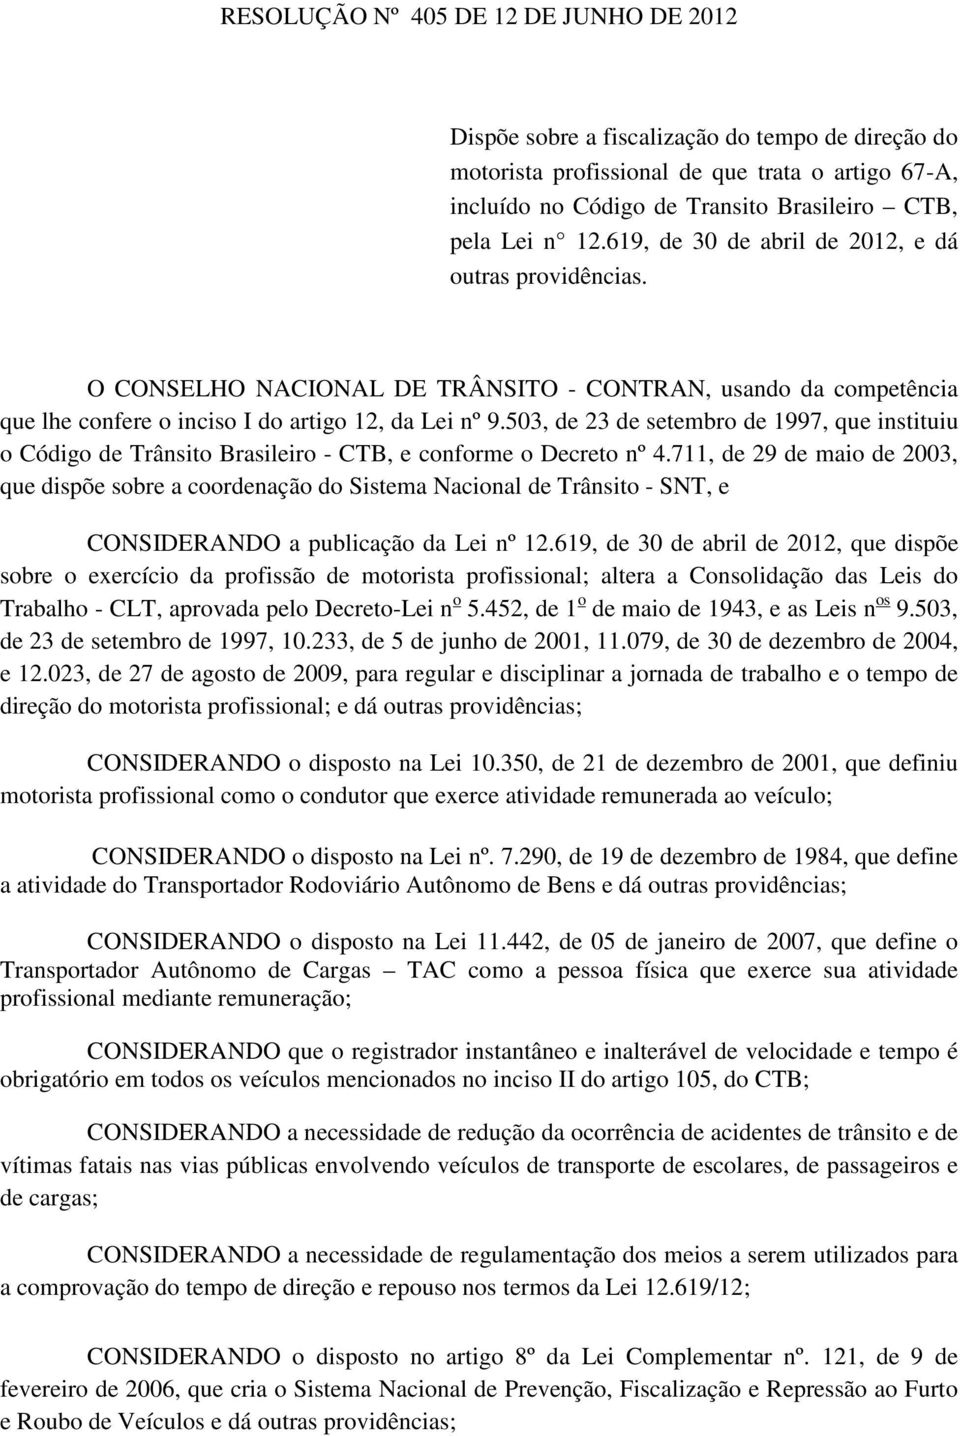 503, de 23 de setembro de 1997, que instituiu o Código de Trânsito Brasileiro - CTB, e conforme o Decreto nº 4.